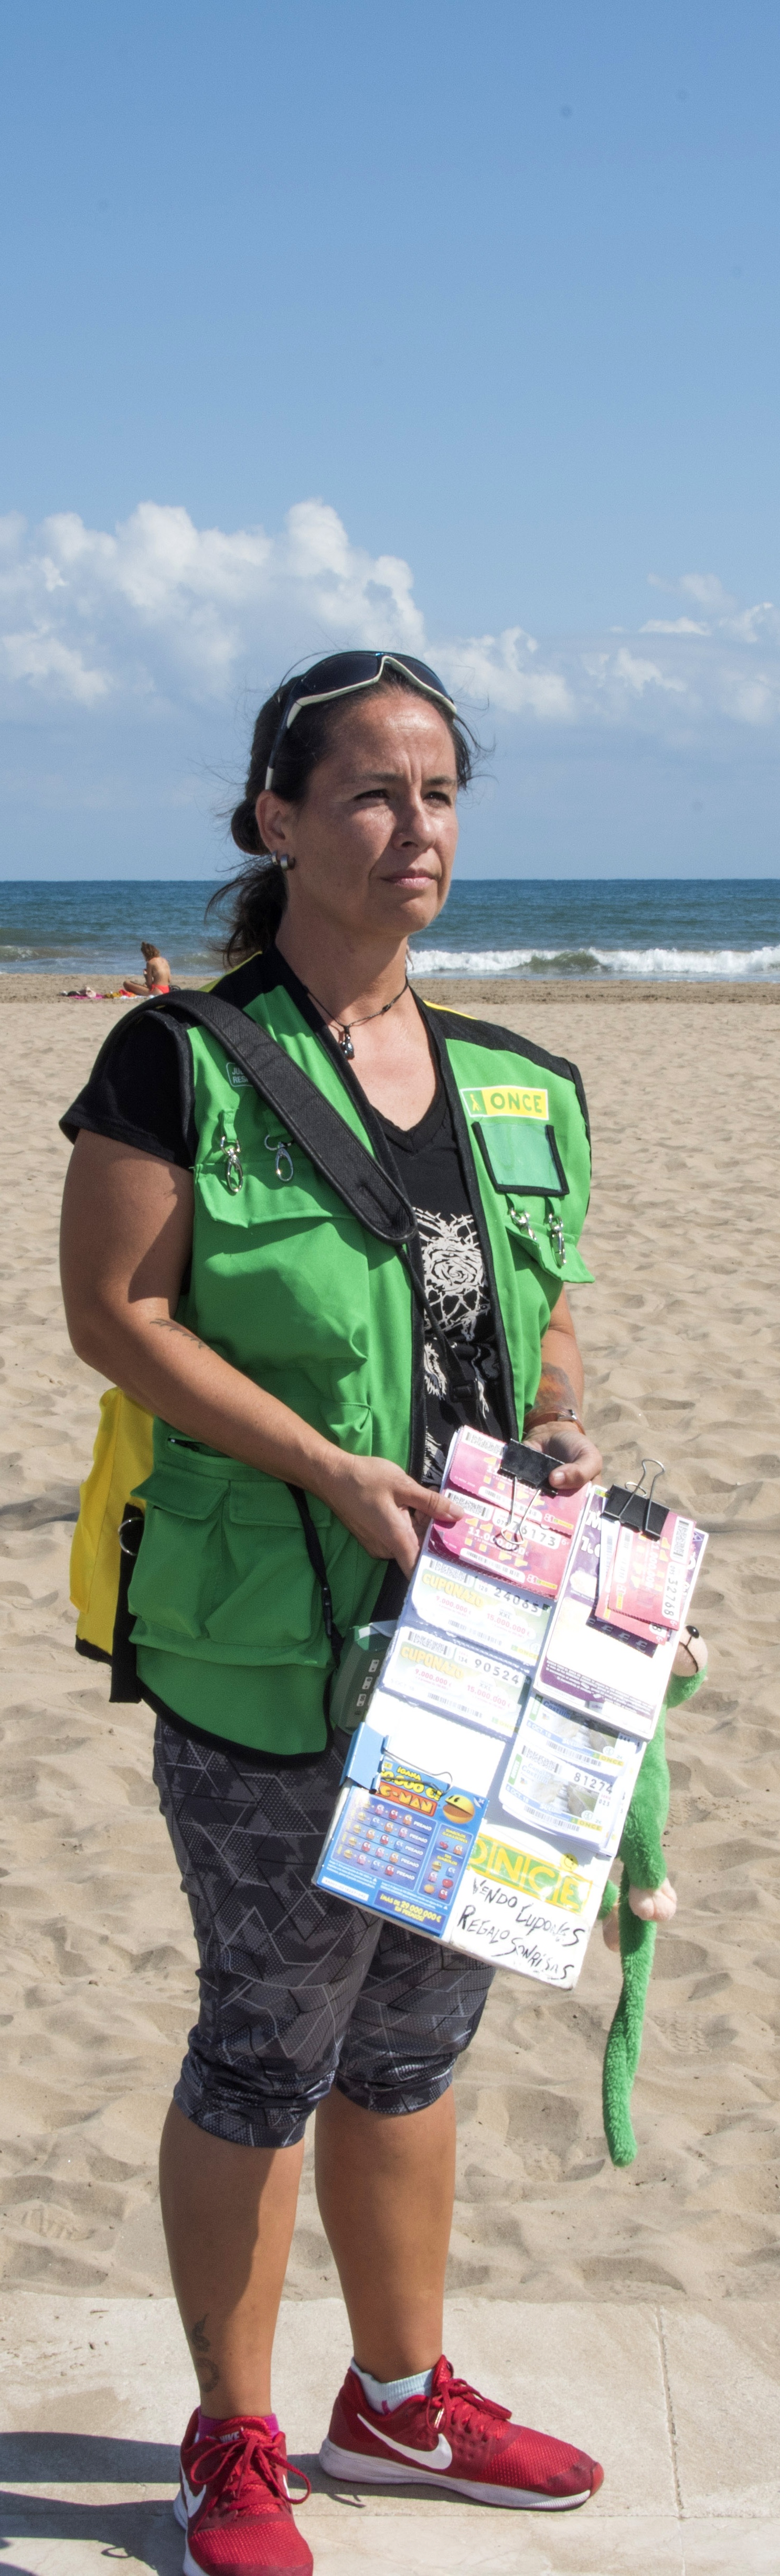 Una vendedora en la playa al sol